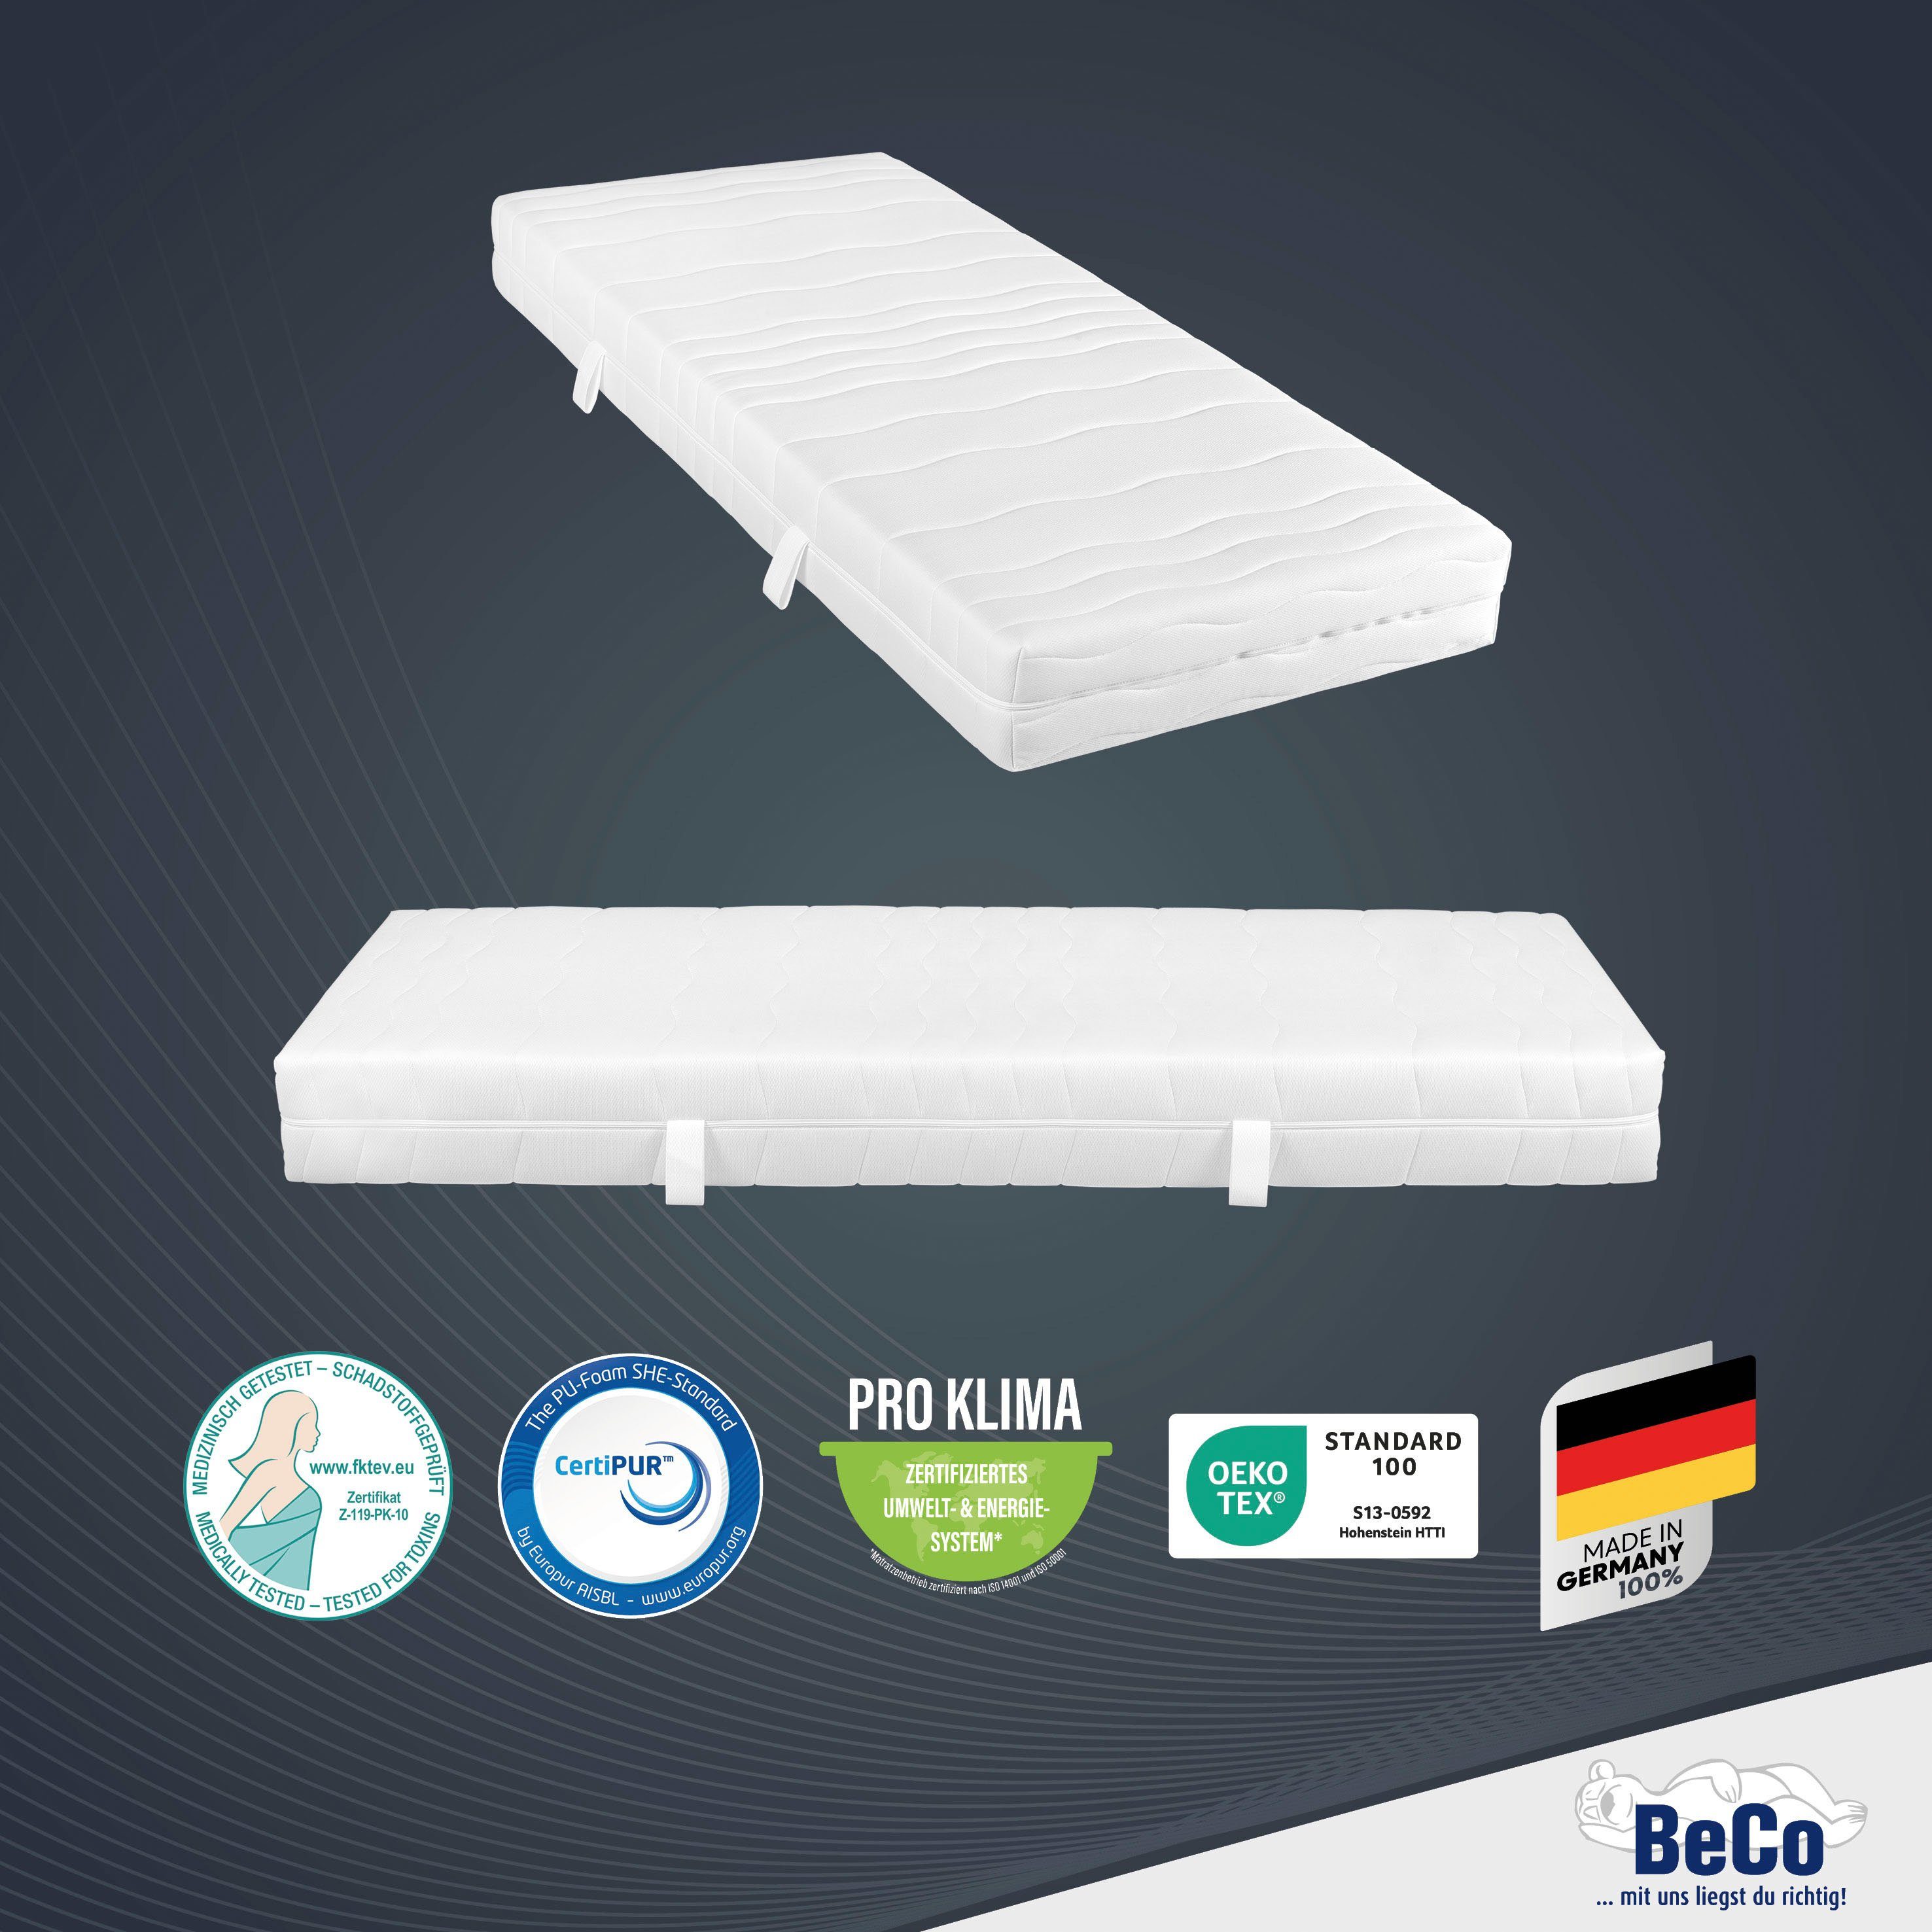 Matratze Komfortschaummatratze weiteren cm erhältlich hoch, 2 in Beco, Dreams, Größen 21 90x200 cm und komfortable